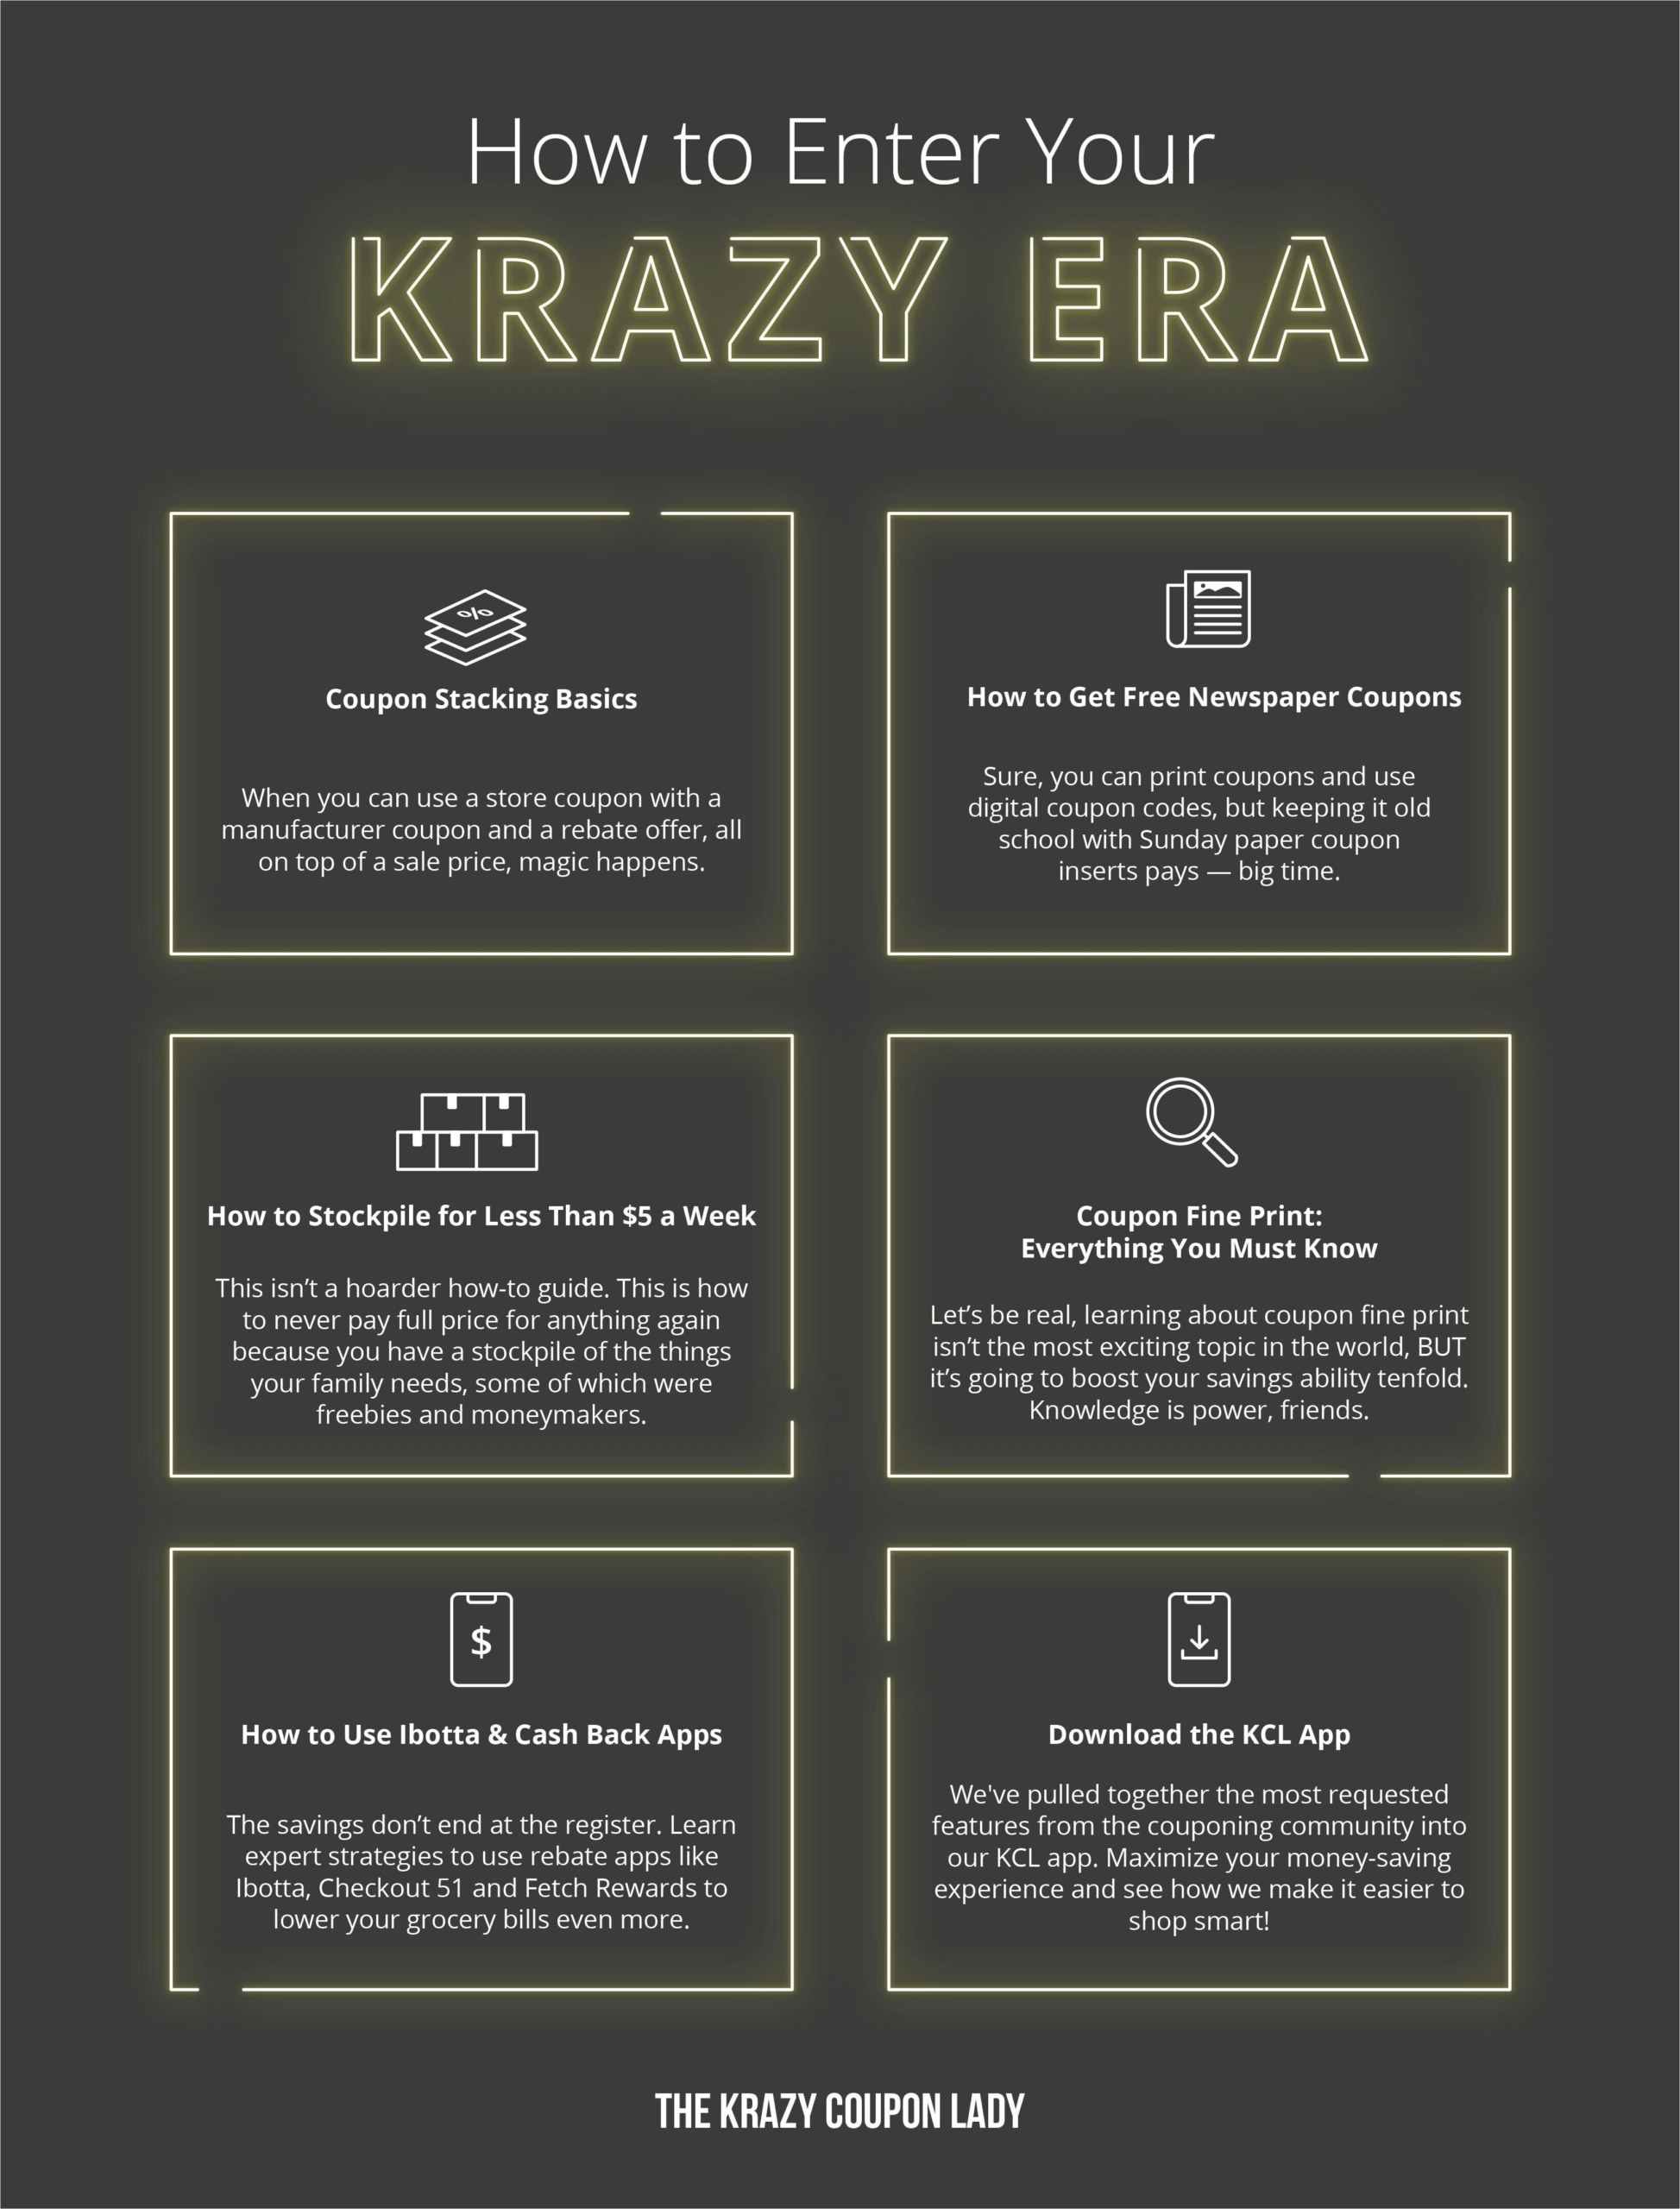 How to Enter Your Krazy Era